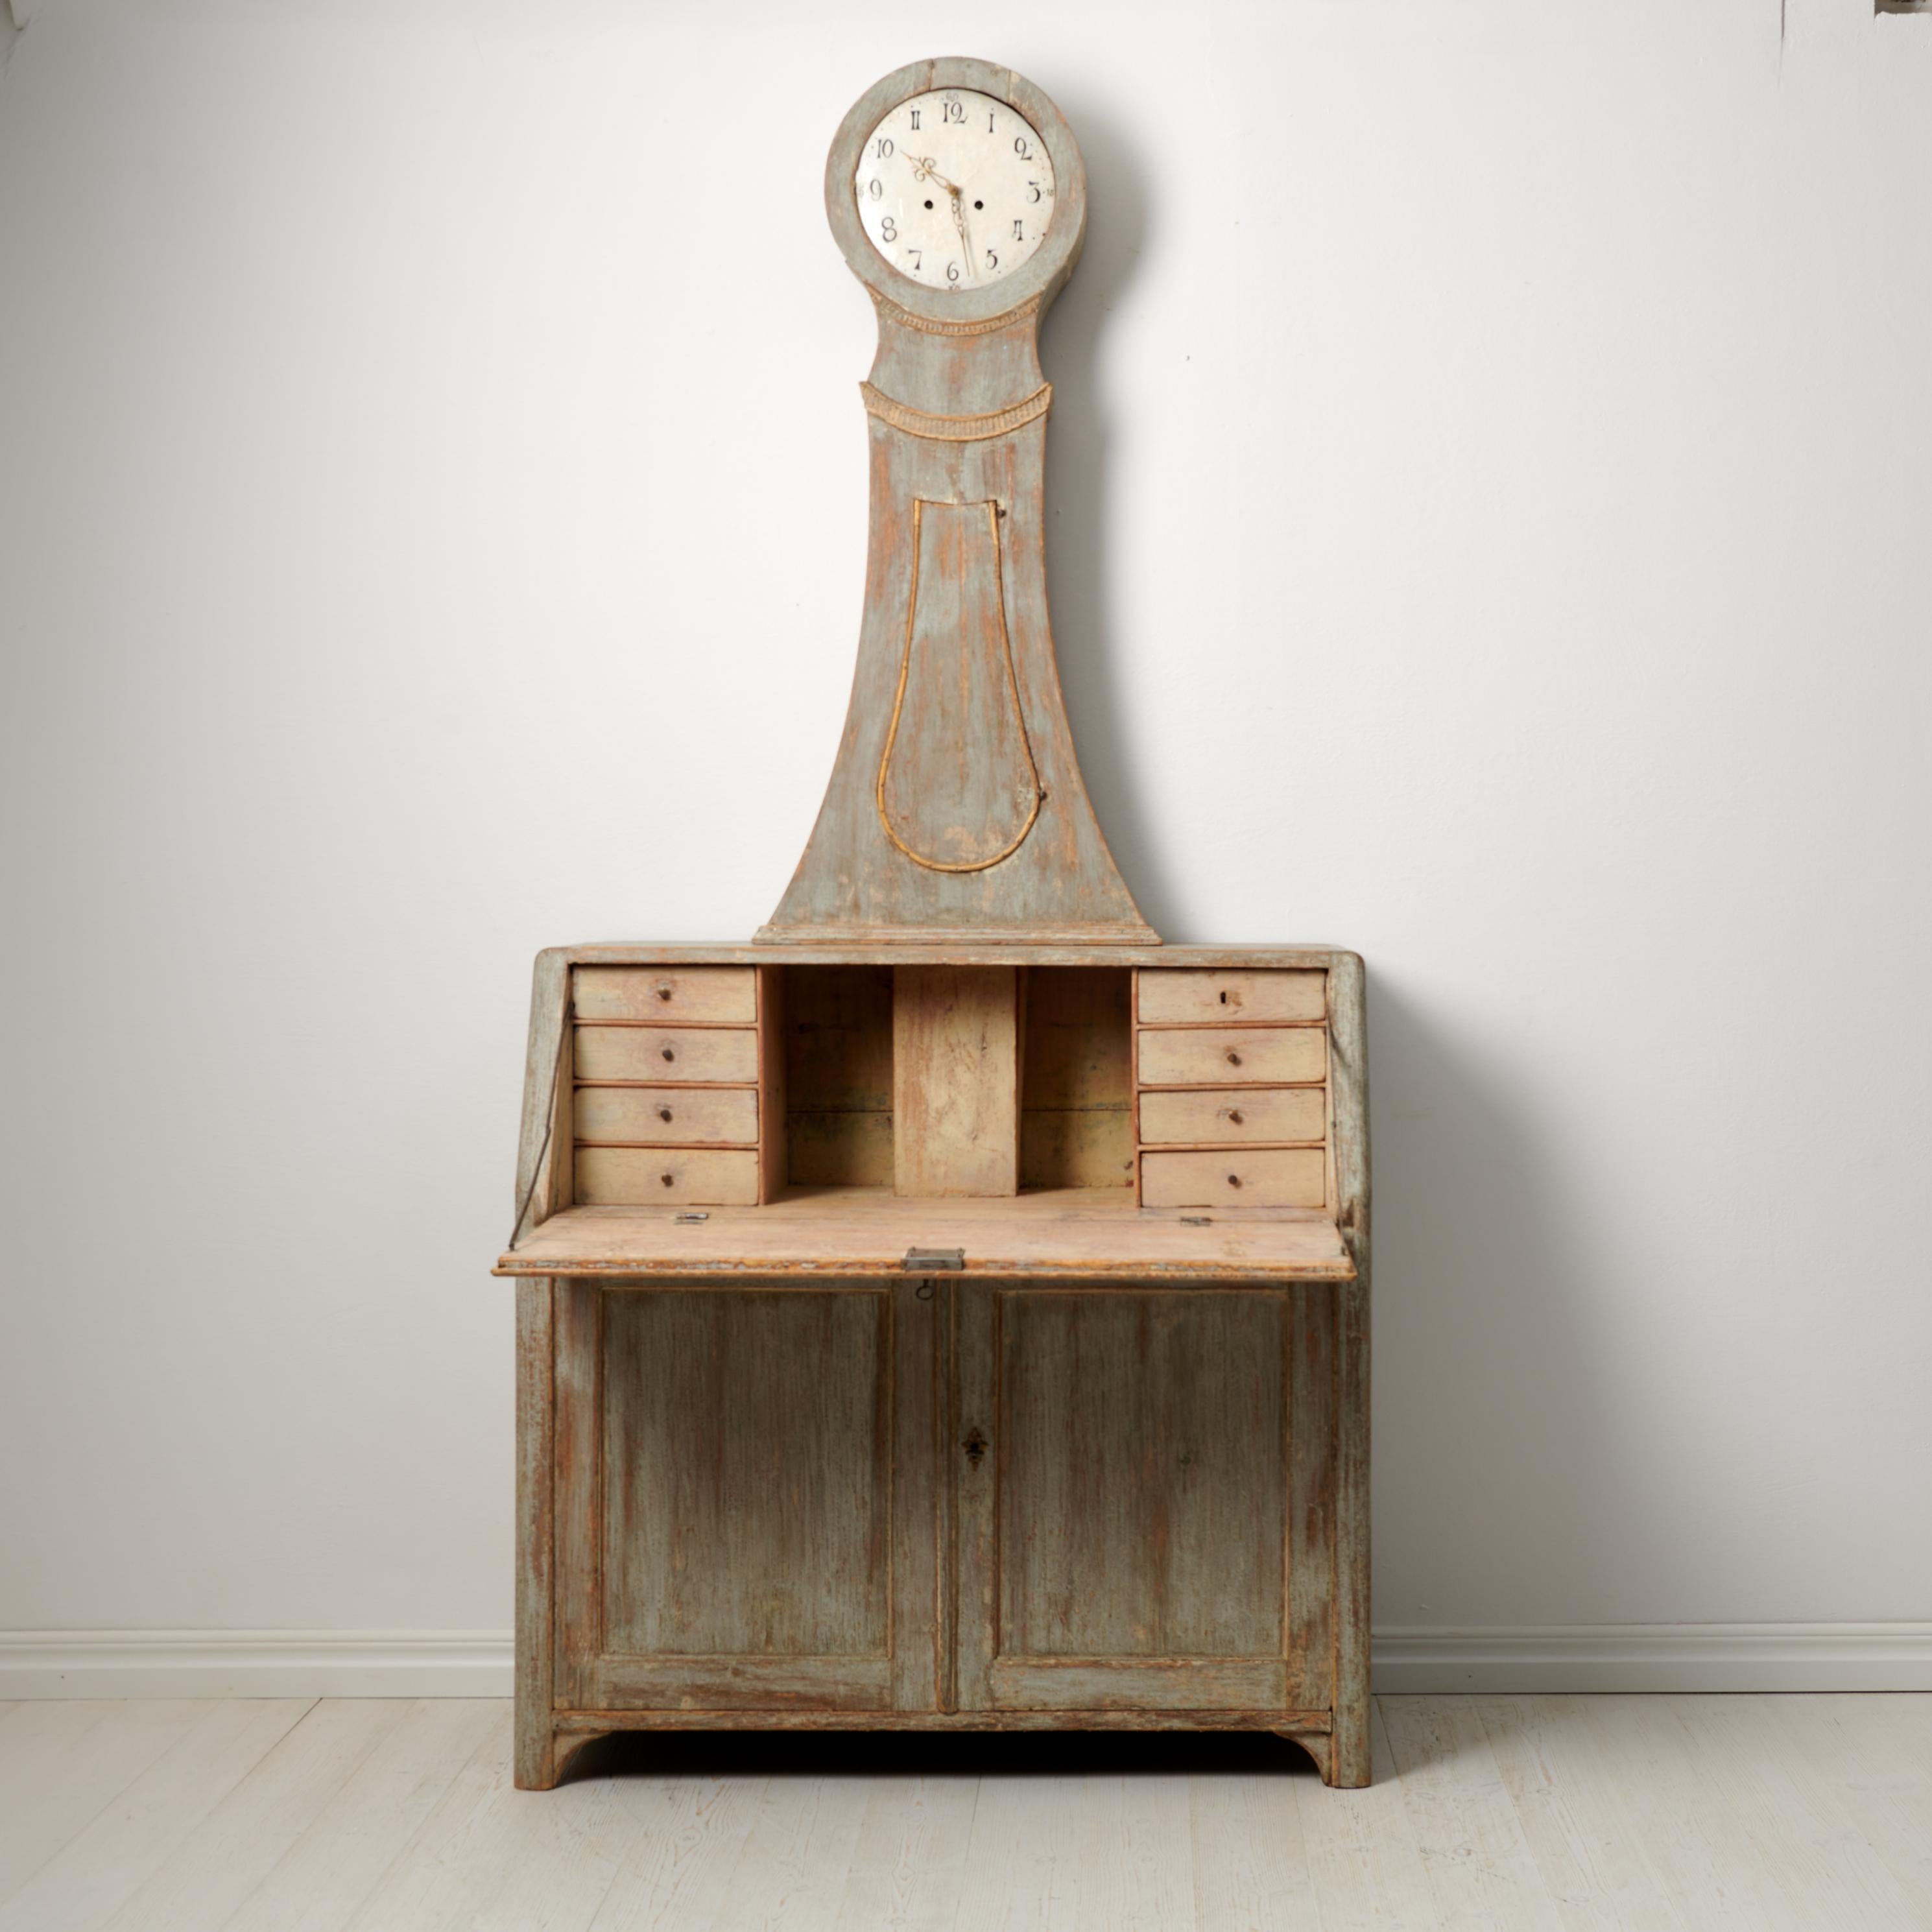 Seltener schwedischer antiker Uhrensekretär-Schreibtisch, hergestellt um 1820 bis 1840 in Nordschweden. Das Pult und der Korpus der Uhr sind von Hand aus massivem Kiefernholz gefertigt. Er verfügt über eine aufklappbare Tischplatte und Schubladen im